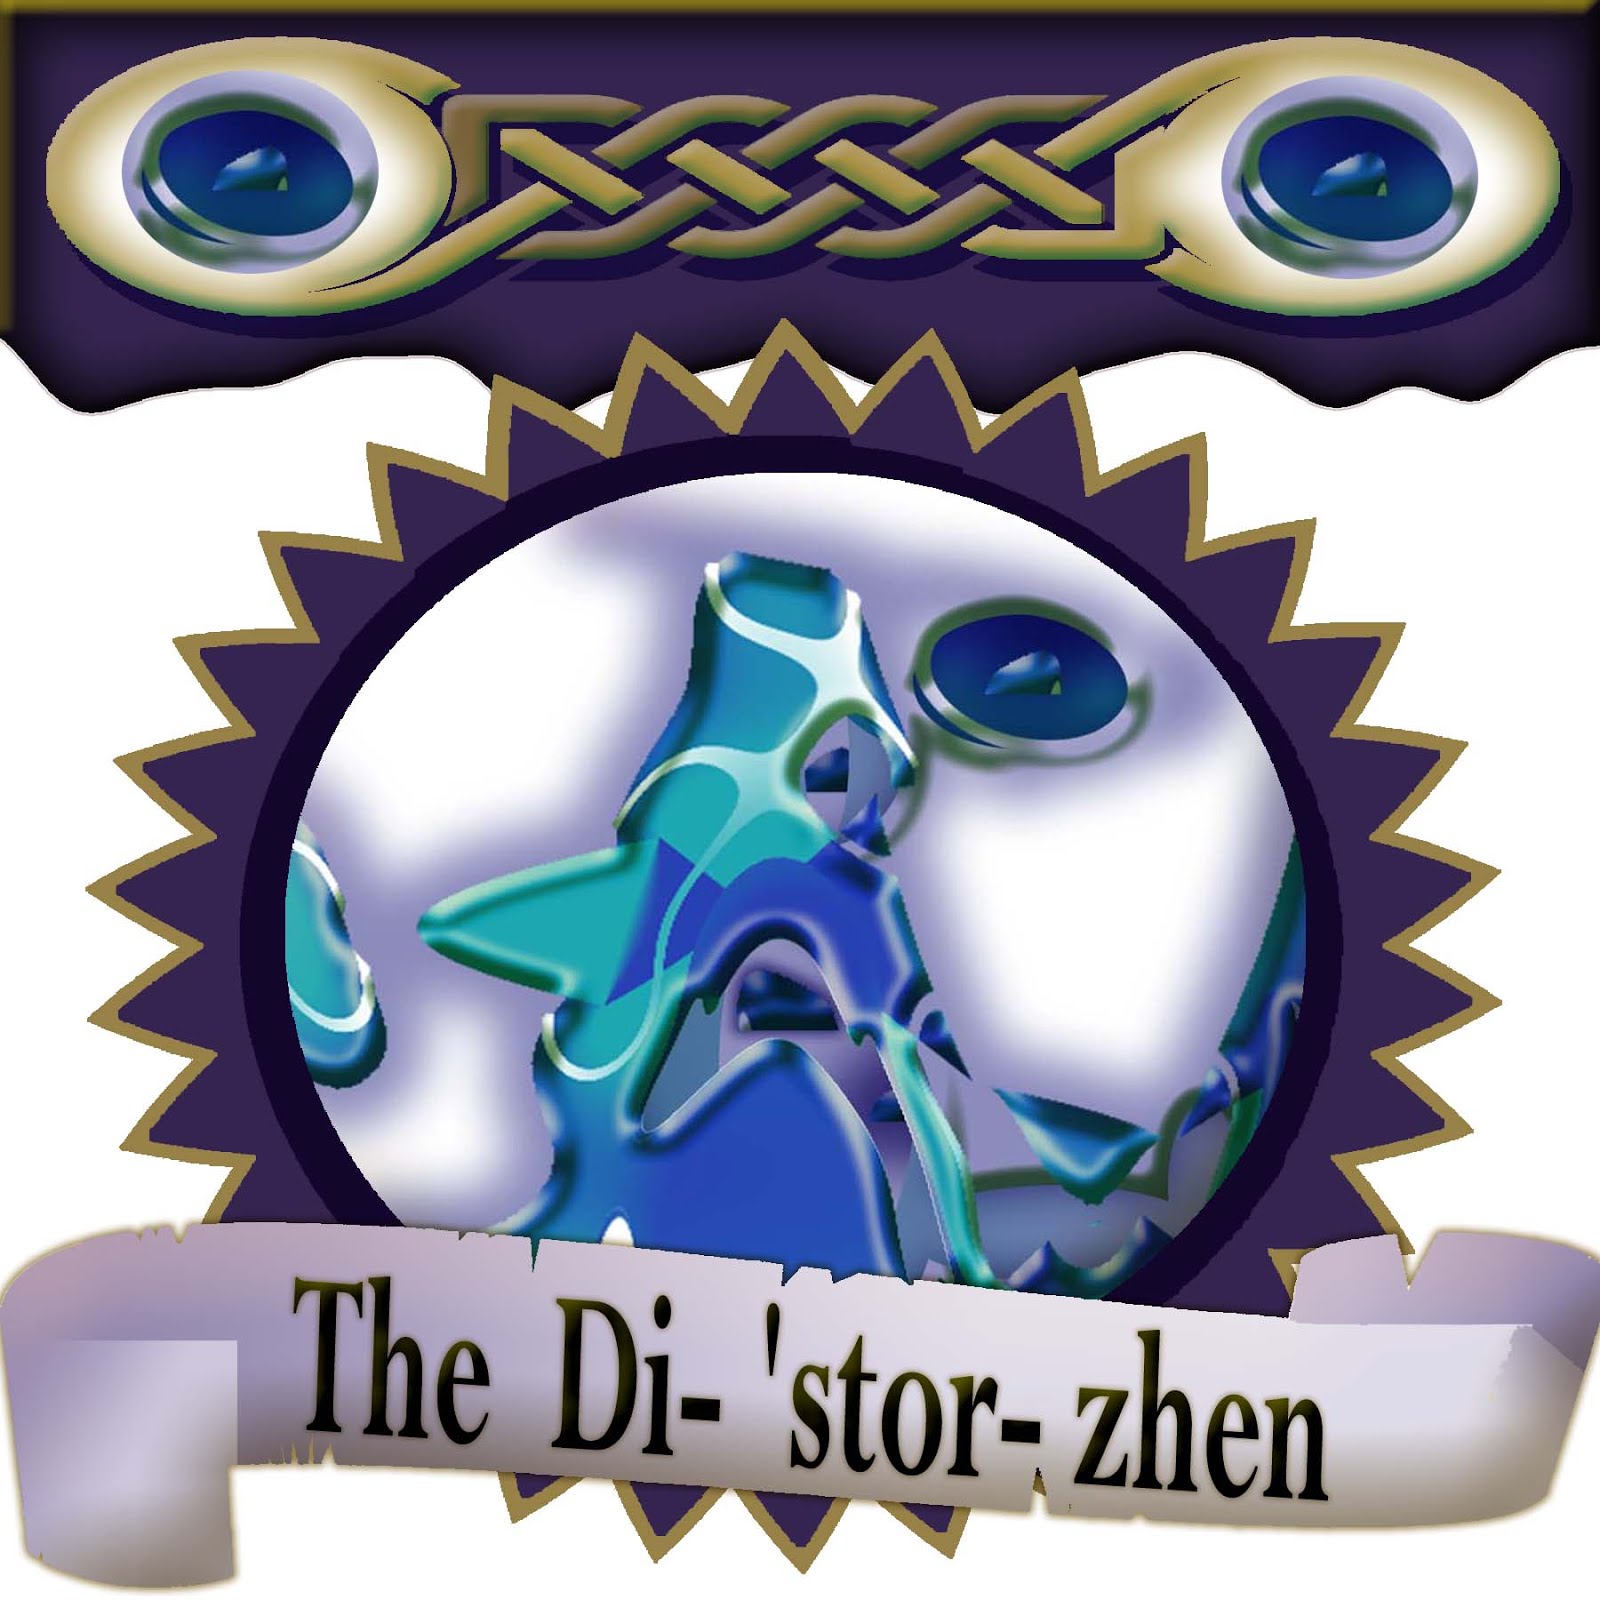 The Di'- 'stor -zhen